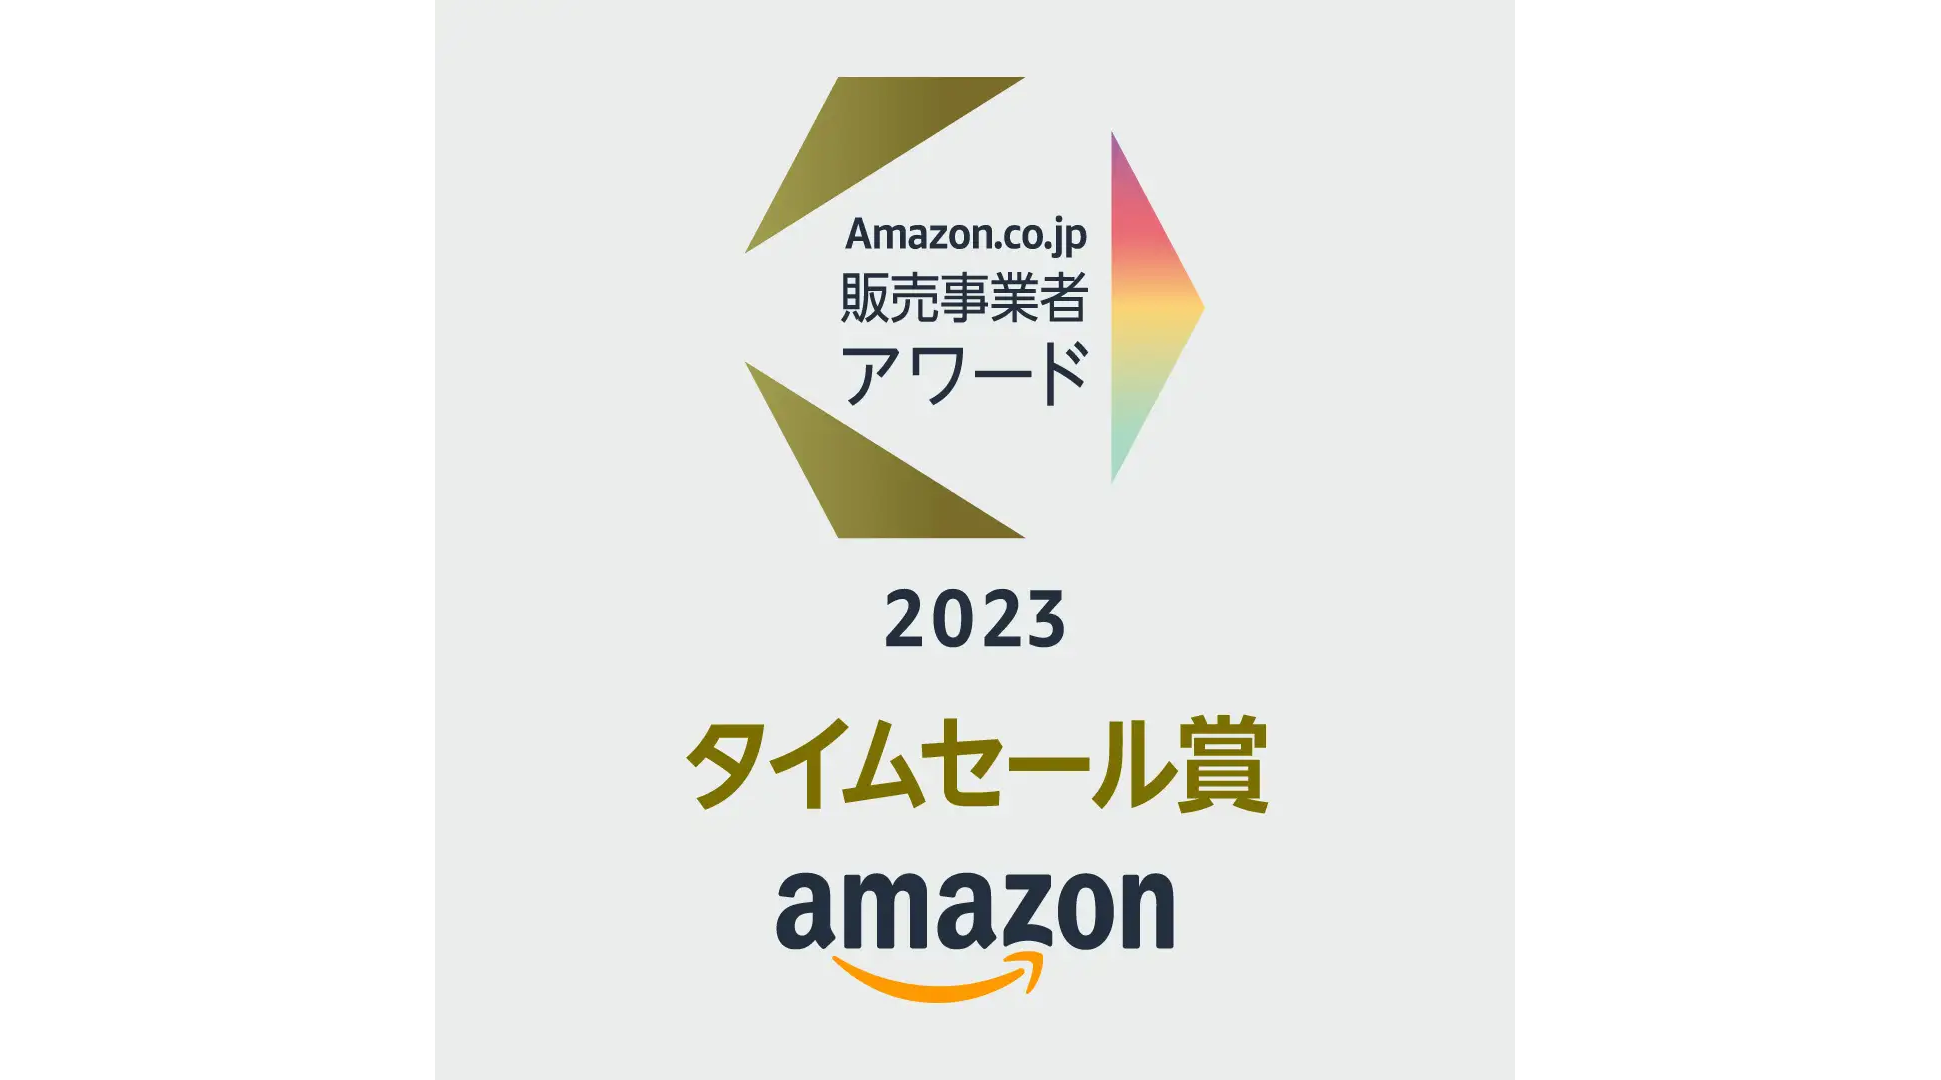 「Amazon.co.jp販売事業者アワード2023」にて「Amazfit」が「タイムセール賞」を受賞